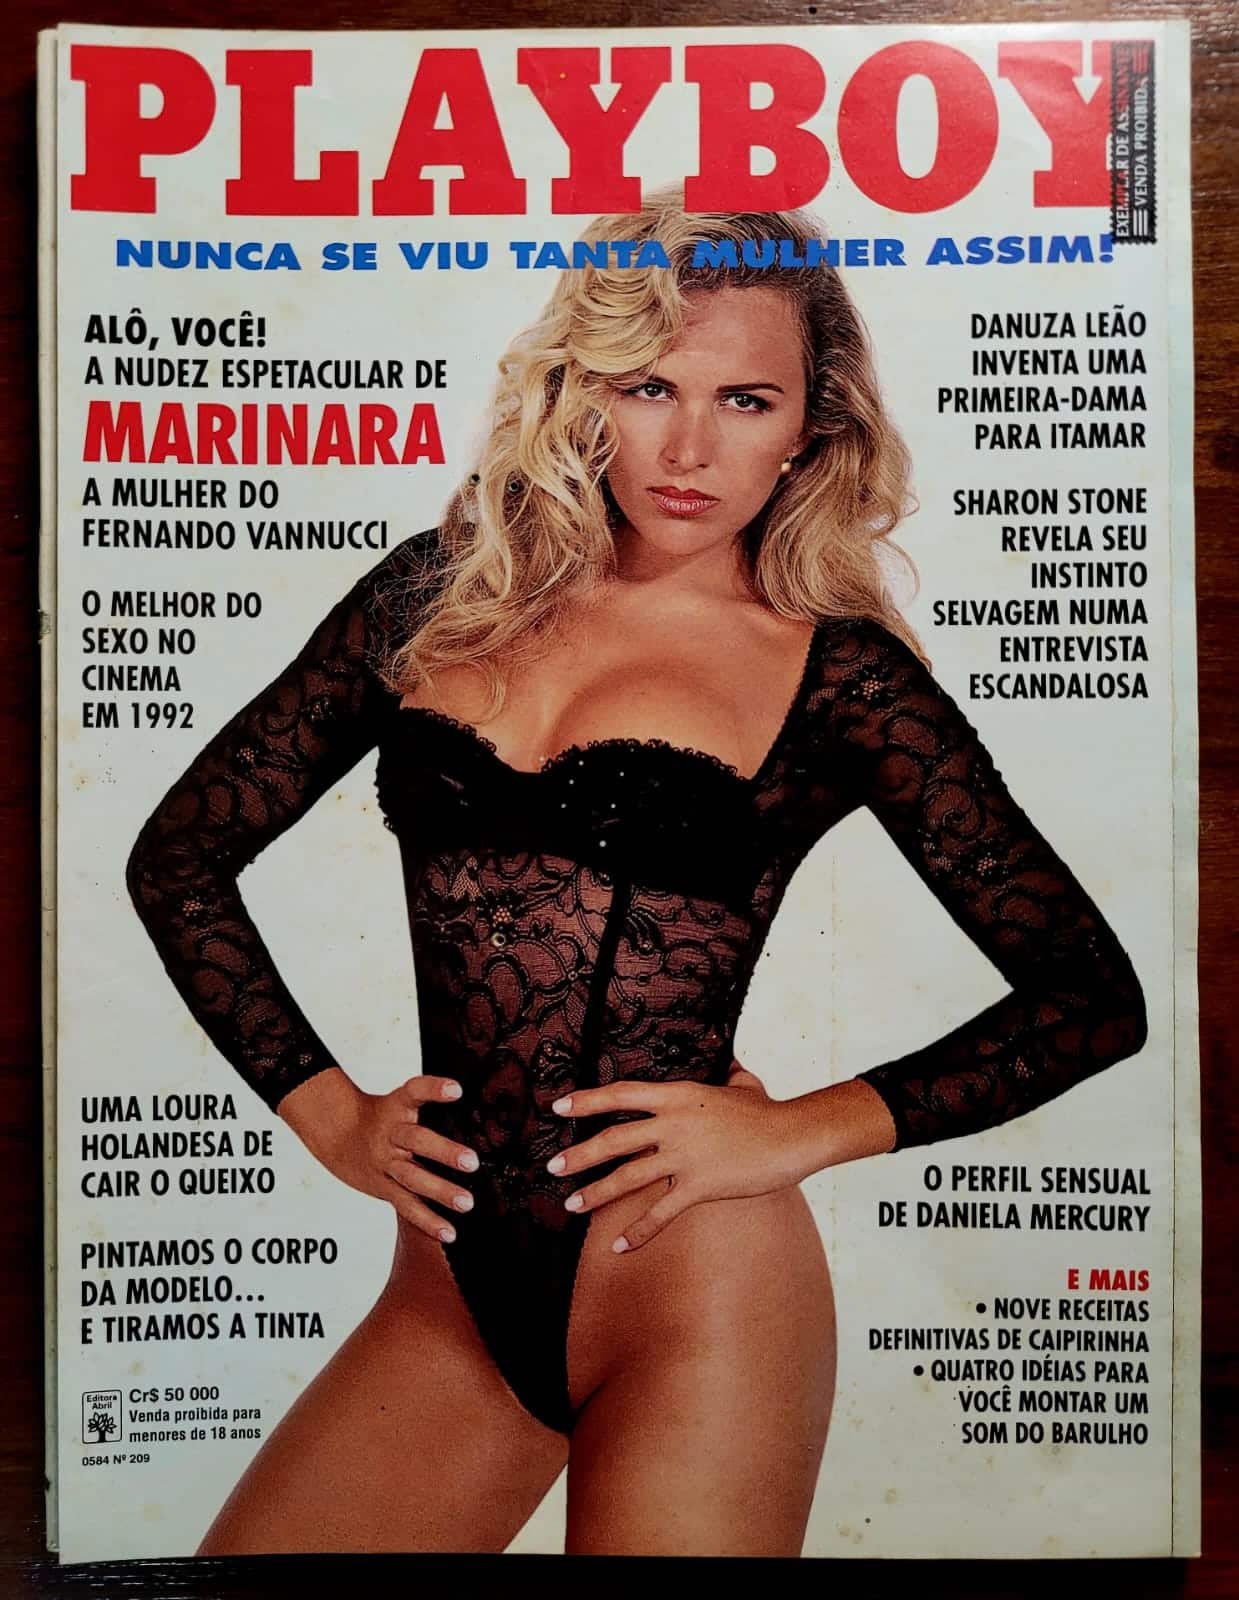 Playboy No 209 Marinara A Mulher do Fernando Vannuci 1 Casa do Colecionador